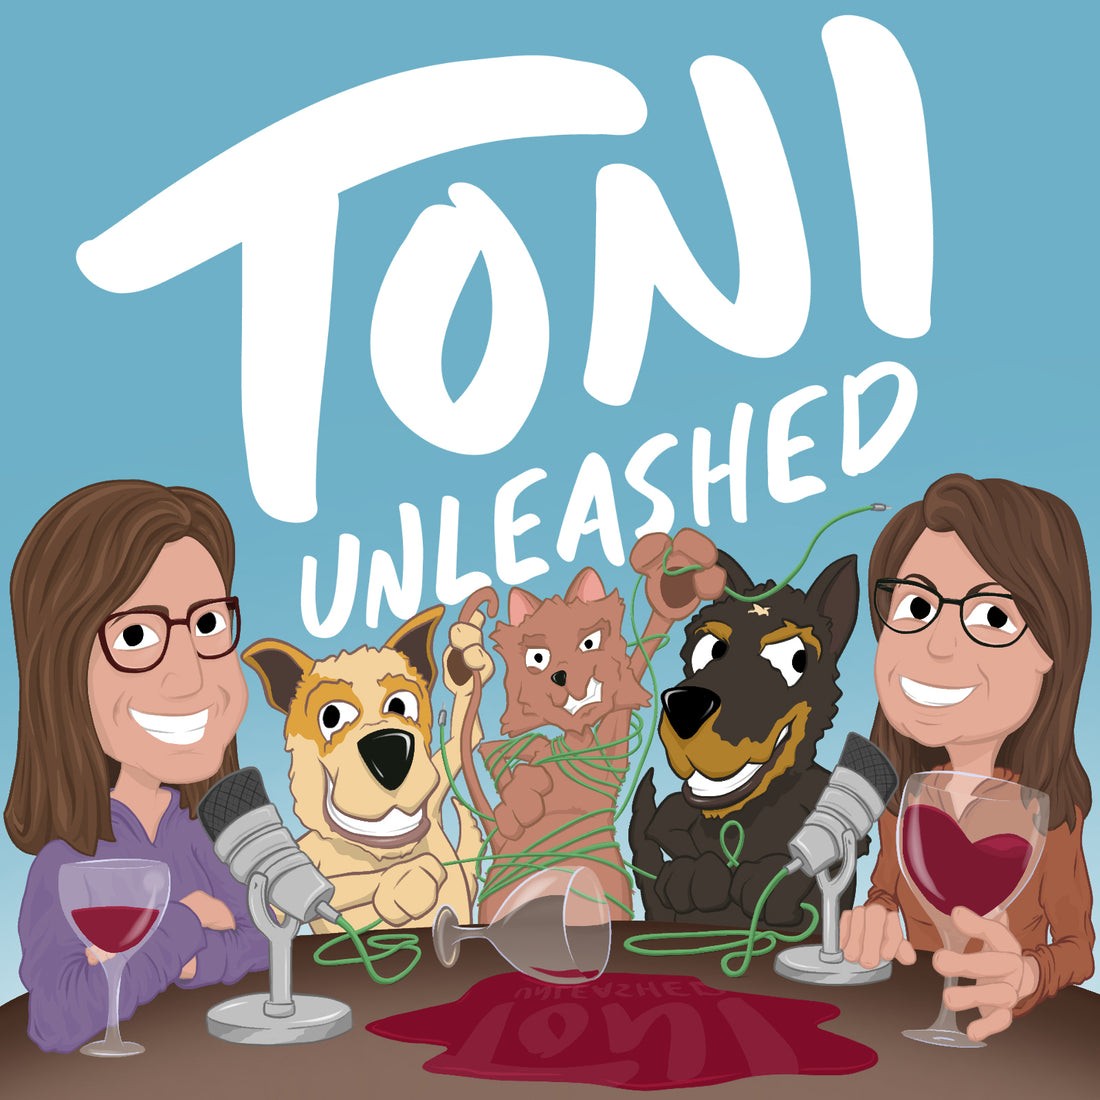 Toni Unleashed #podcast: Season 1/Episode 30